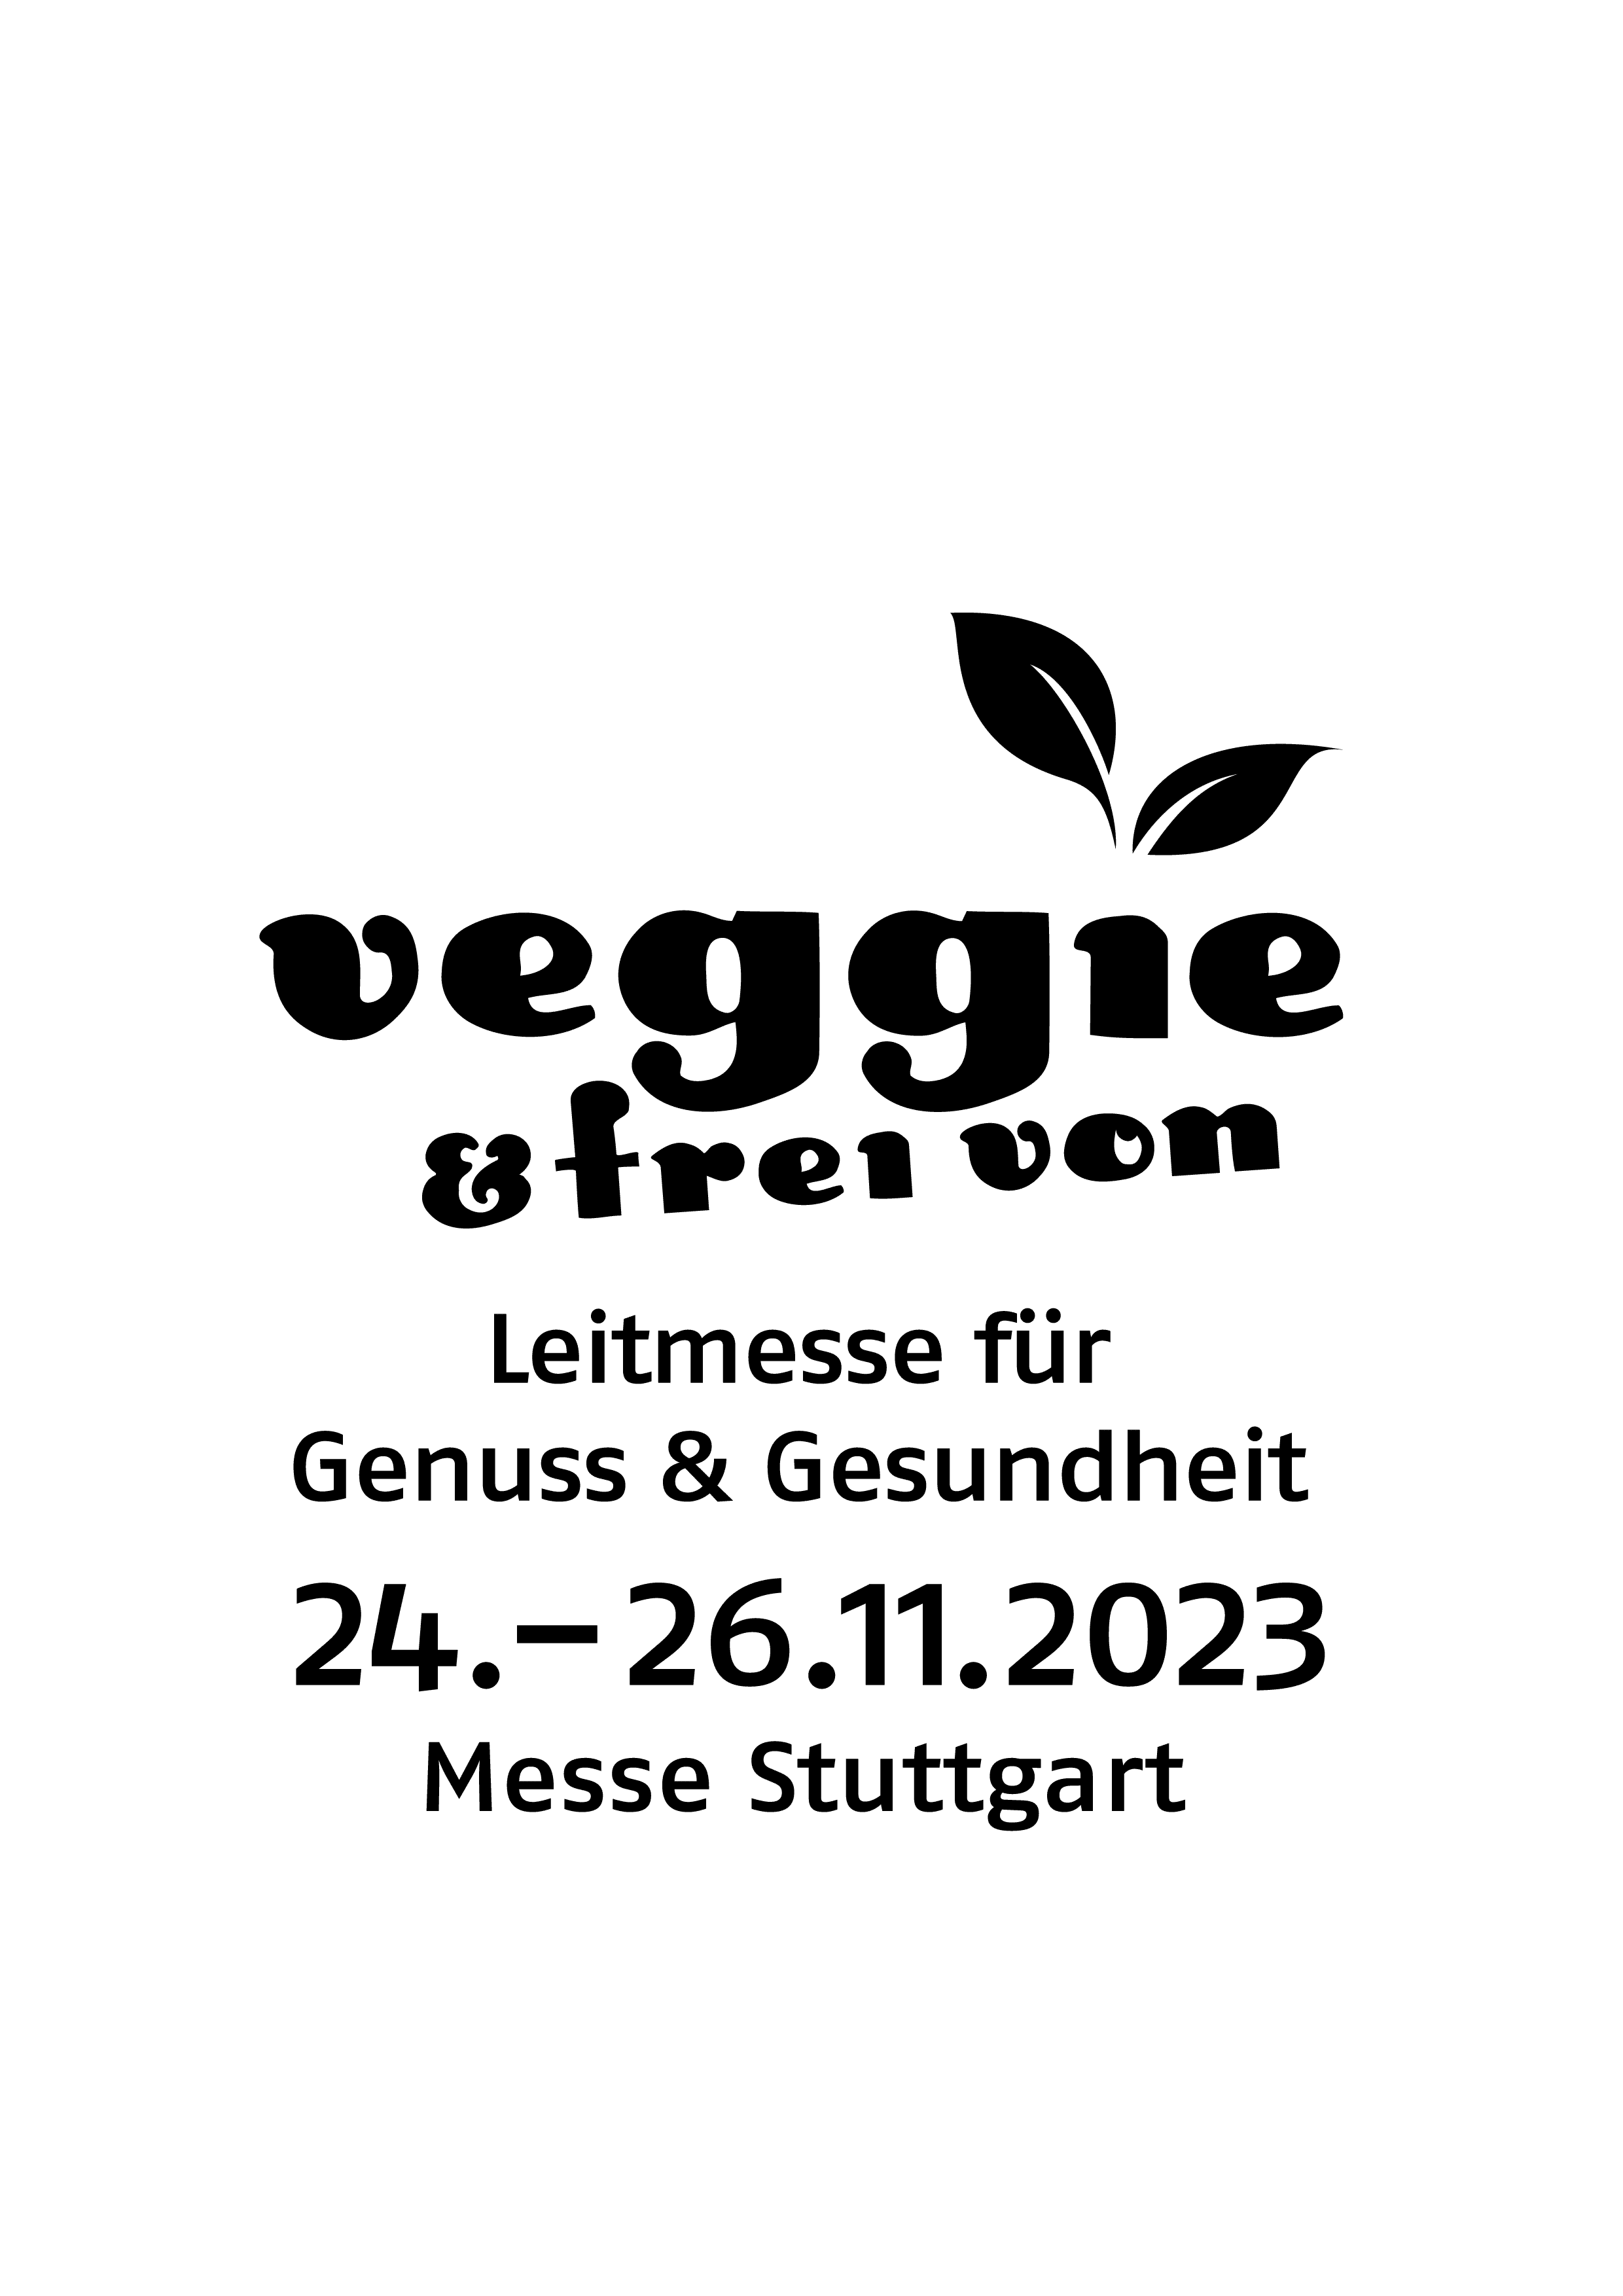 Logo veggie & frei von 2023